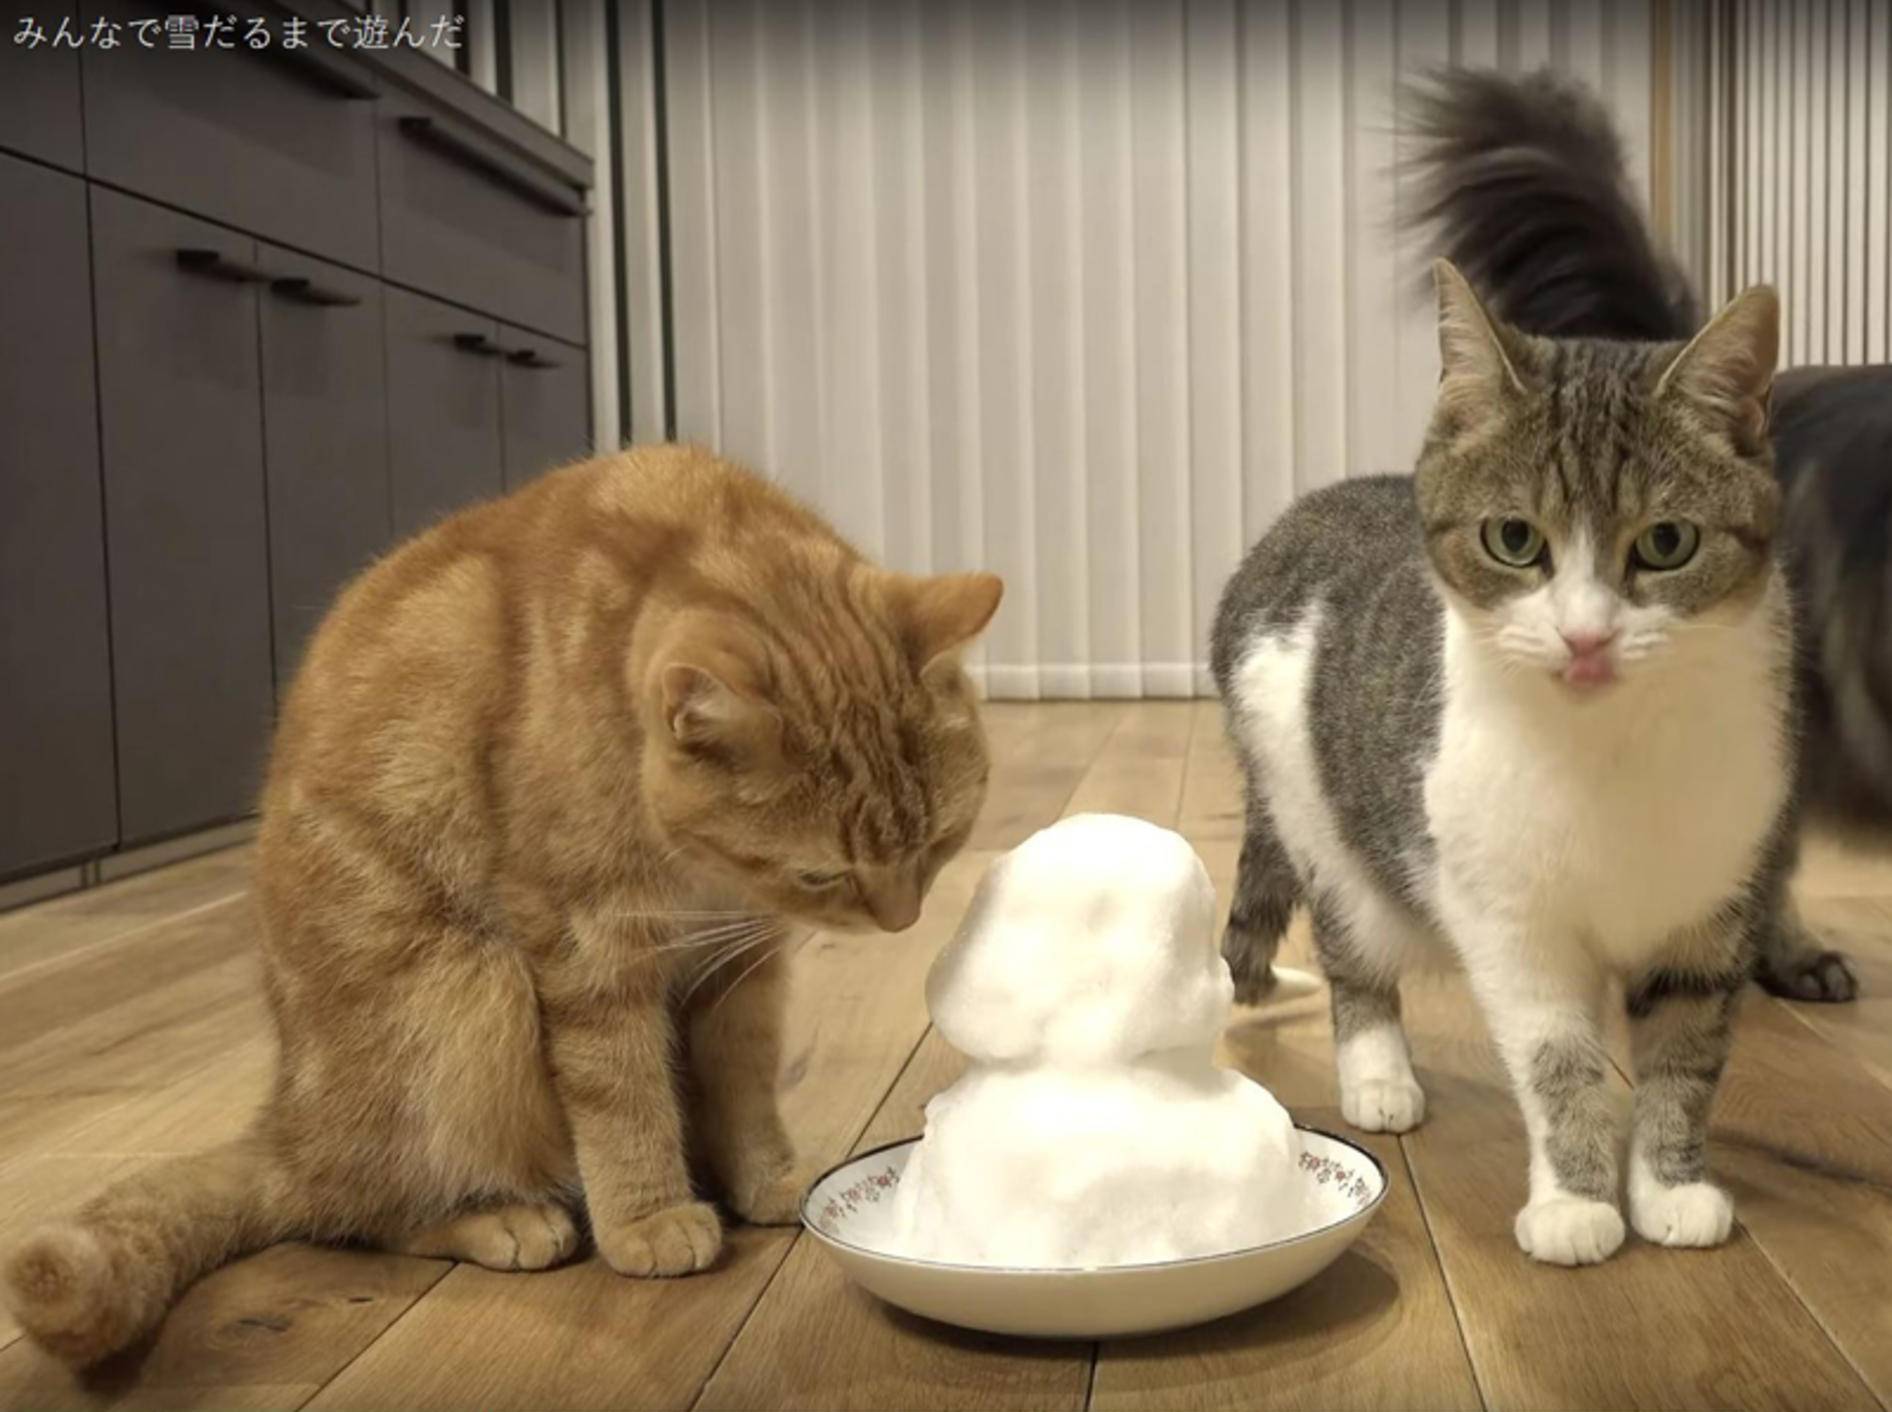 Ein Schneemann für die japanische Katzen-WG – YouTube / 10 Cats.+